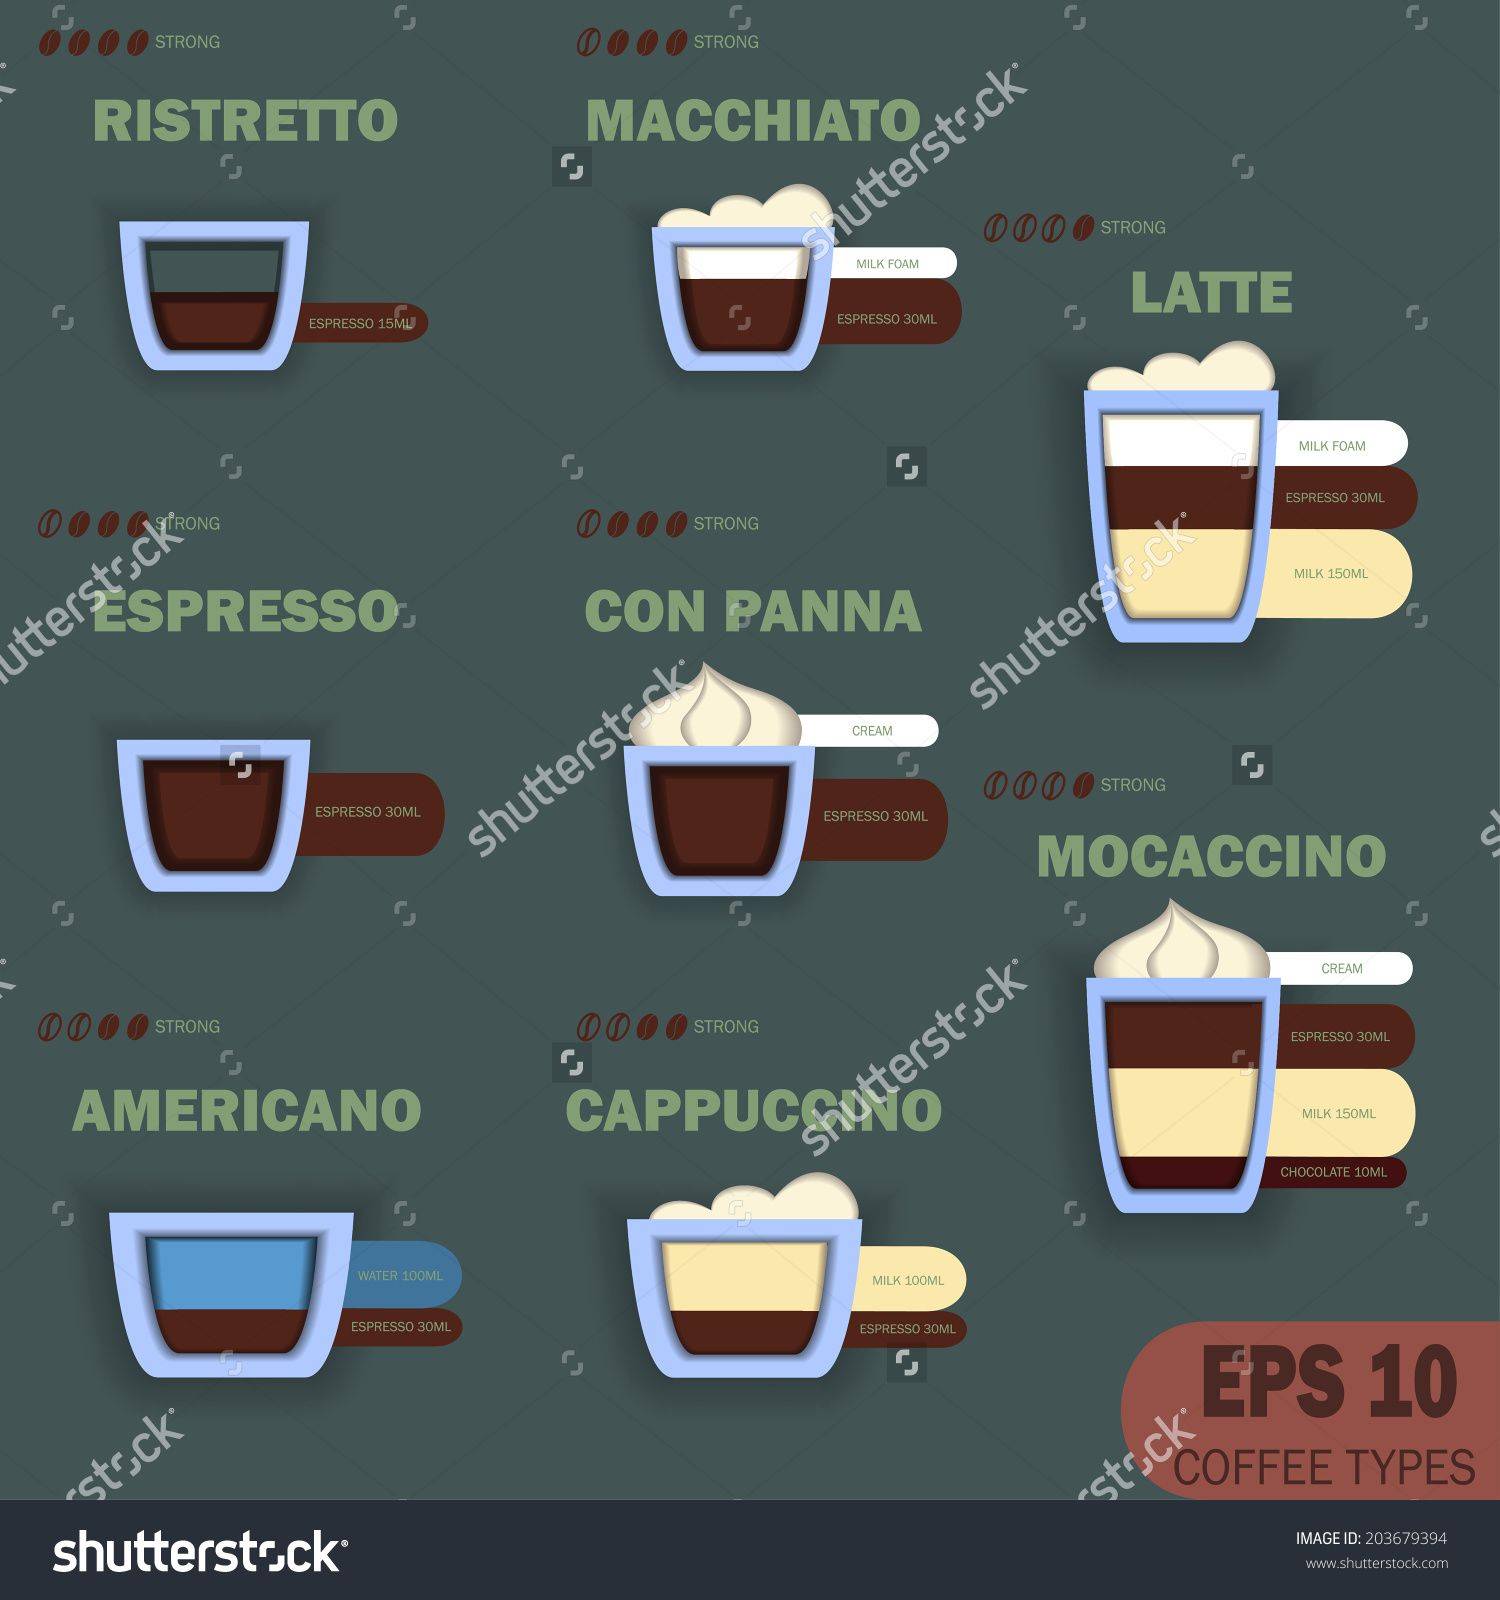 Кофе эспрессо: вкусные рецепты для приготовления в домашних условиях